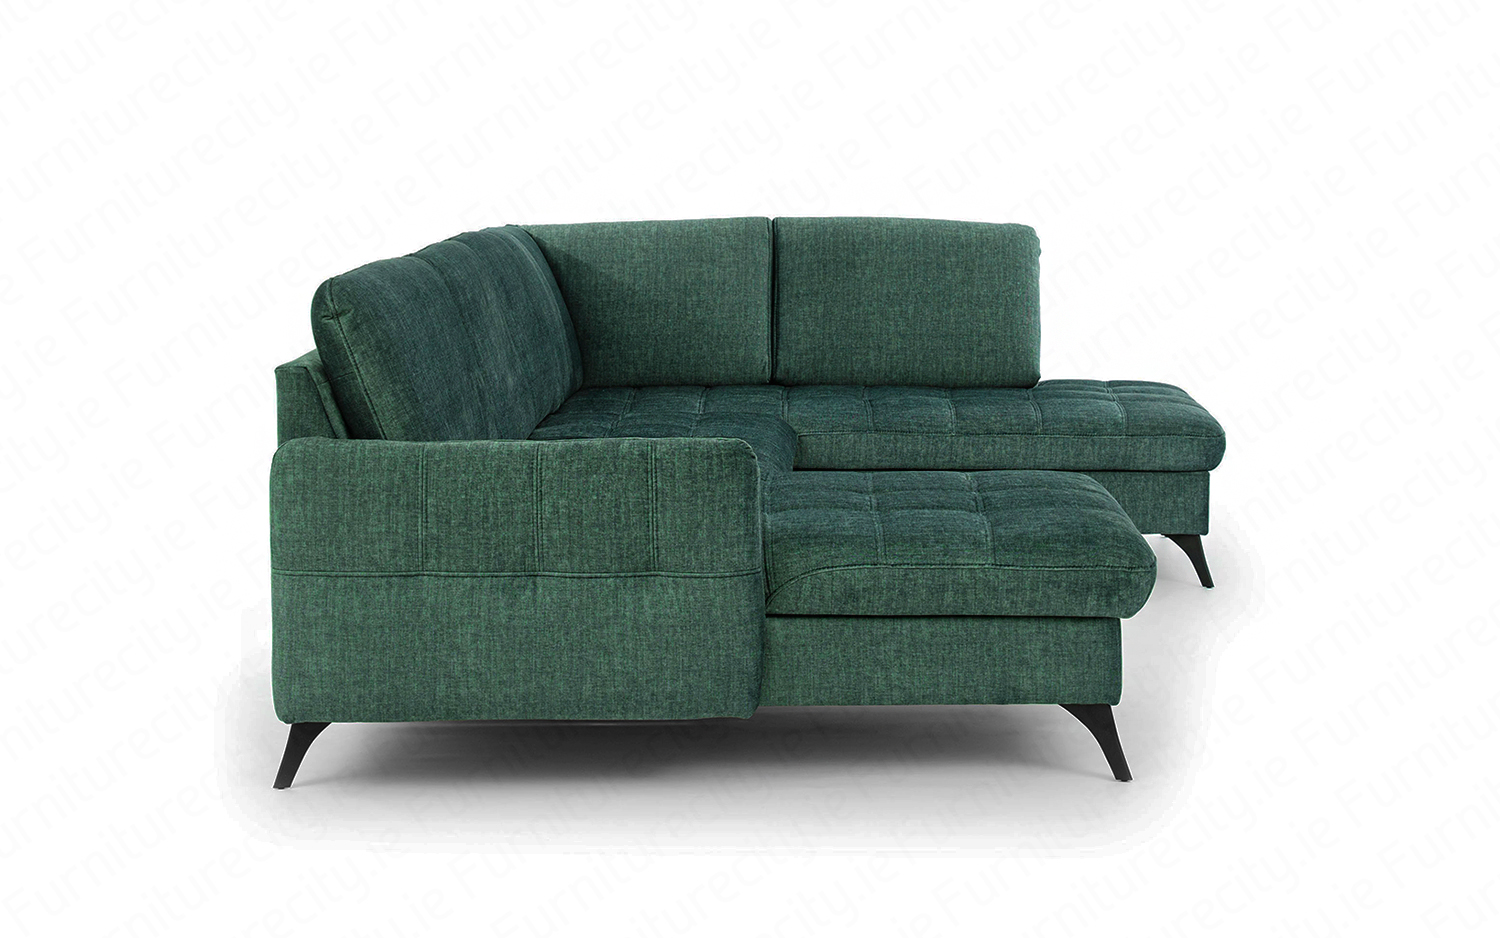 Sofa bed LORI U-SHAPE by Furniturecity.ie